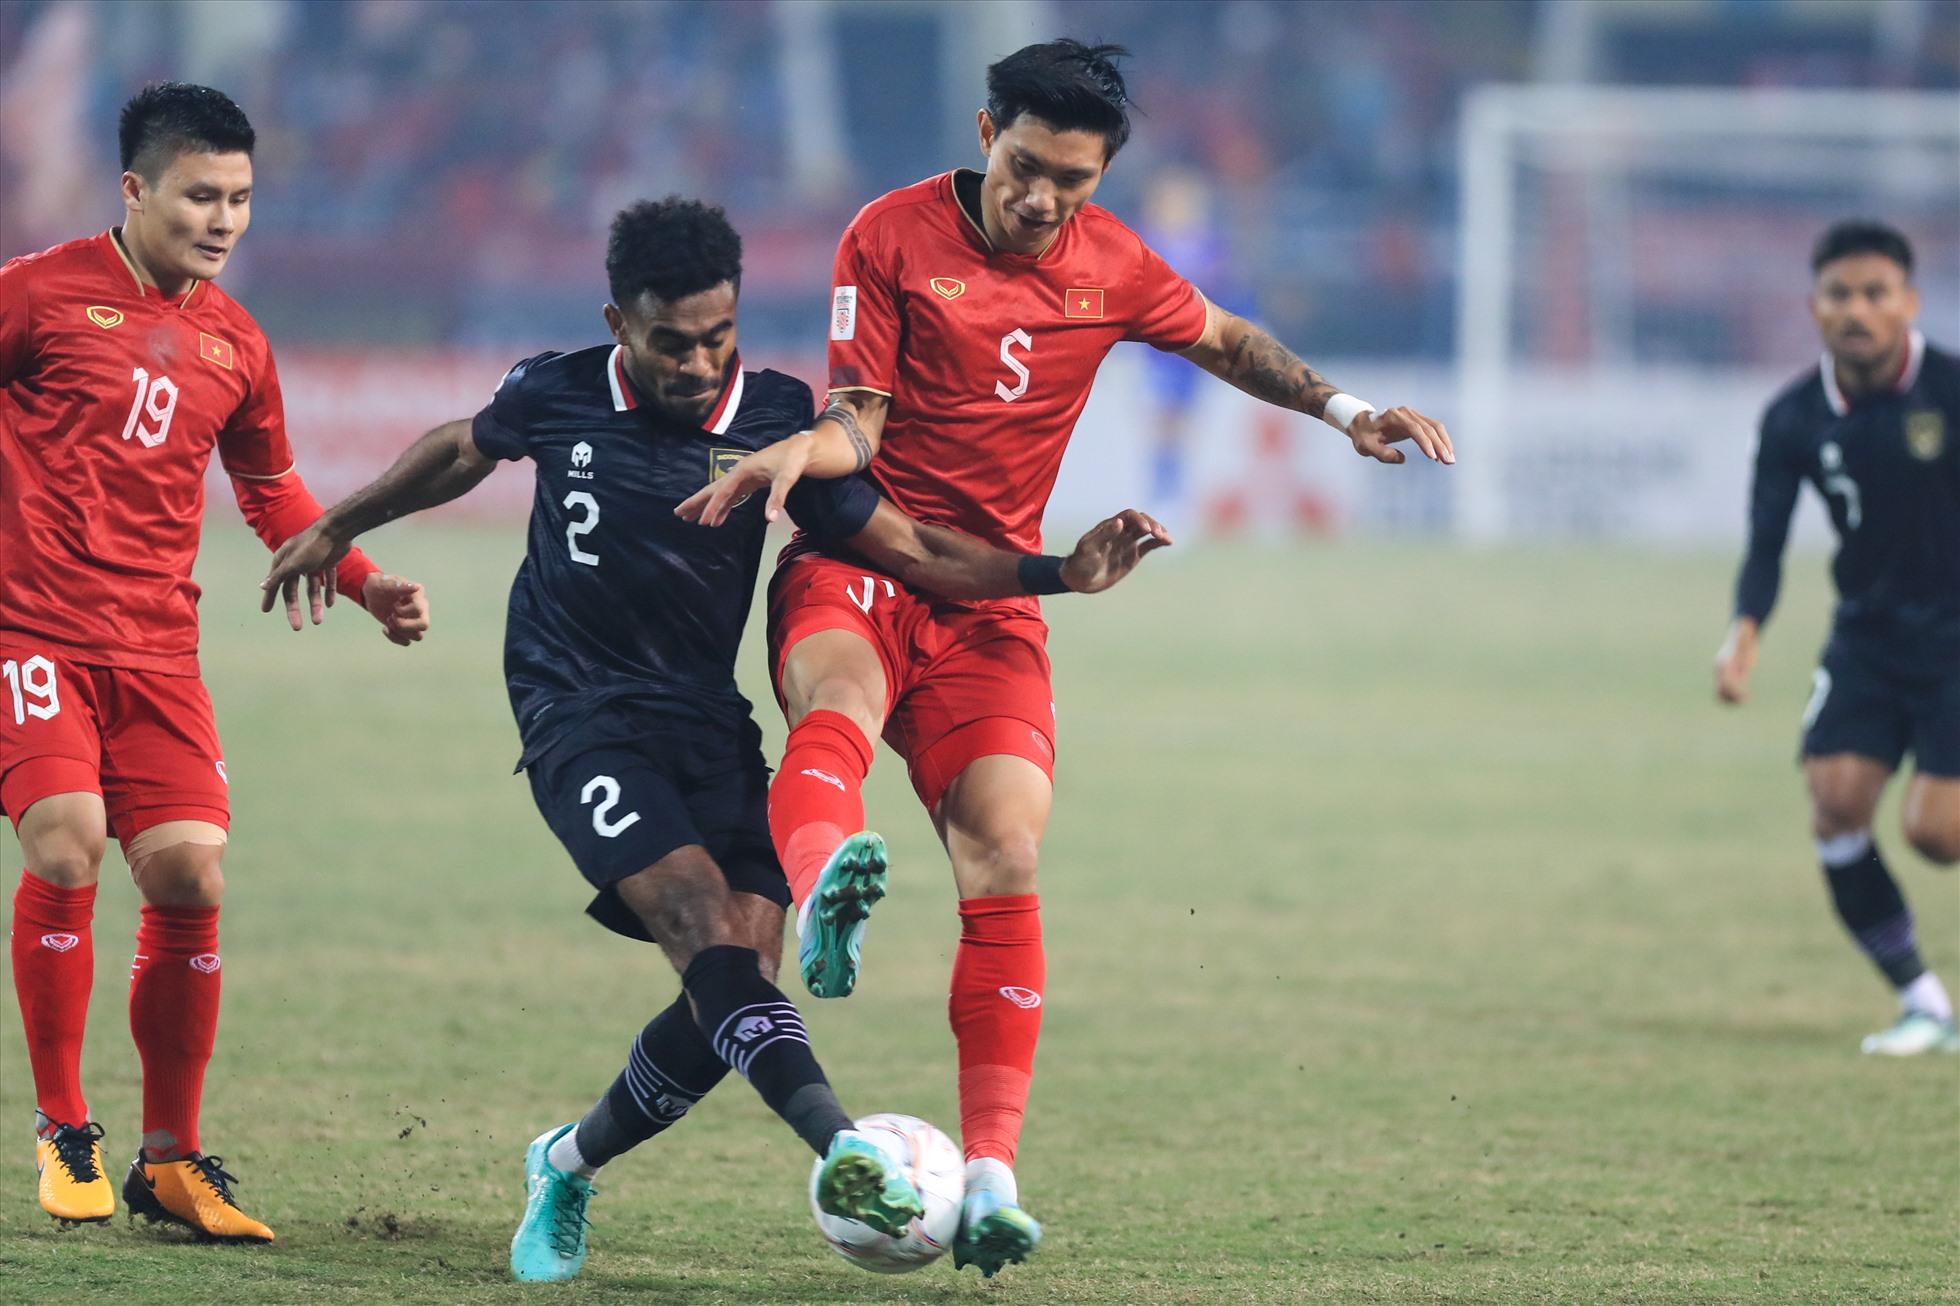 Tối nay (9.1), trận đấu bán kết lượt về AFF Cup 2022 giữa đội tuyển Việt Nam và Indonesia đã diễn ra. Trận đấu hấp dẫn ngay từ đầu với những pha va chạm nảy lửa.